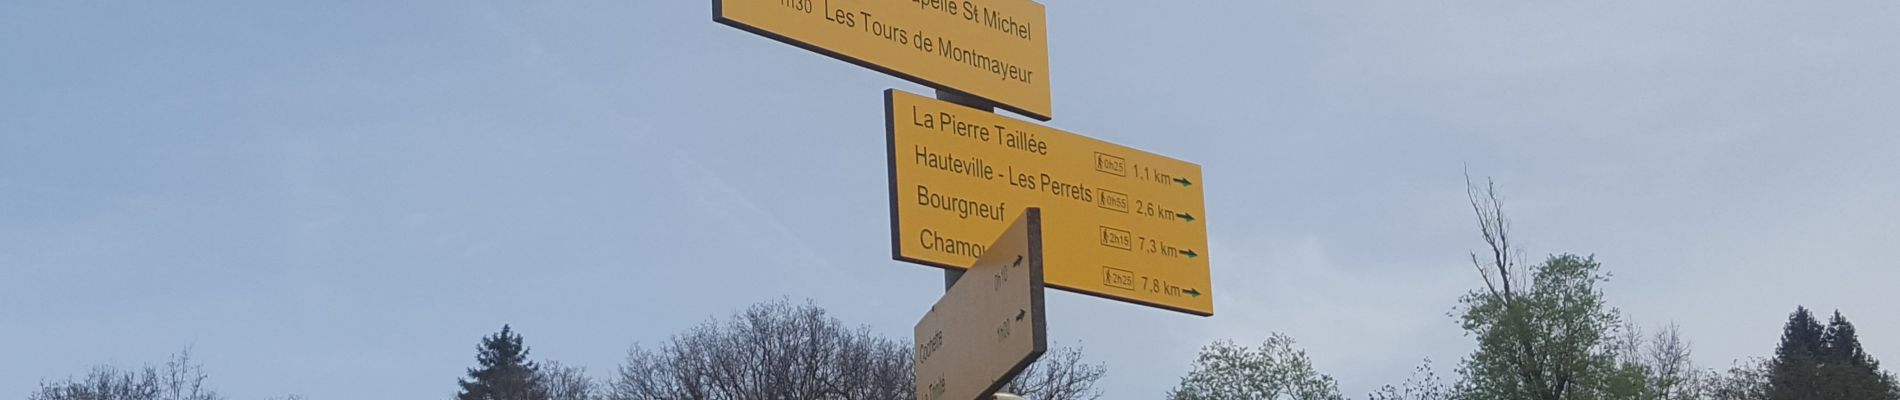 Randonnée Marche La Trinité - Les Tours de Montmayeur au départ de la Trinité via col de Cochette - Photo